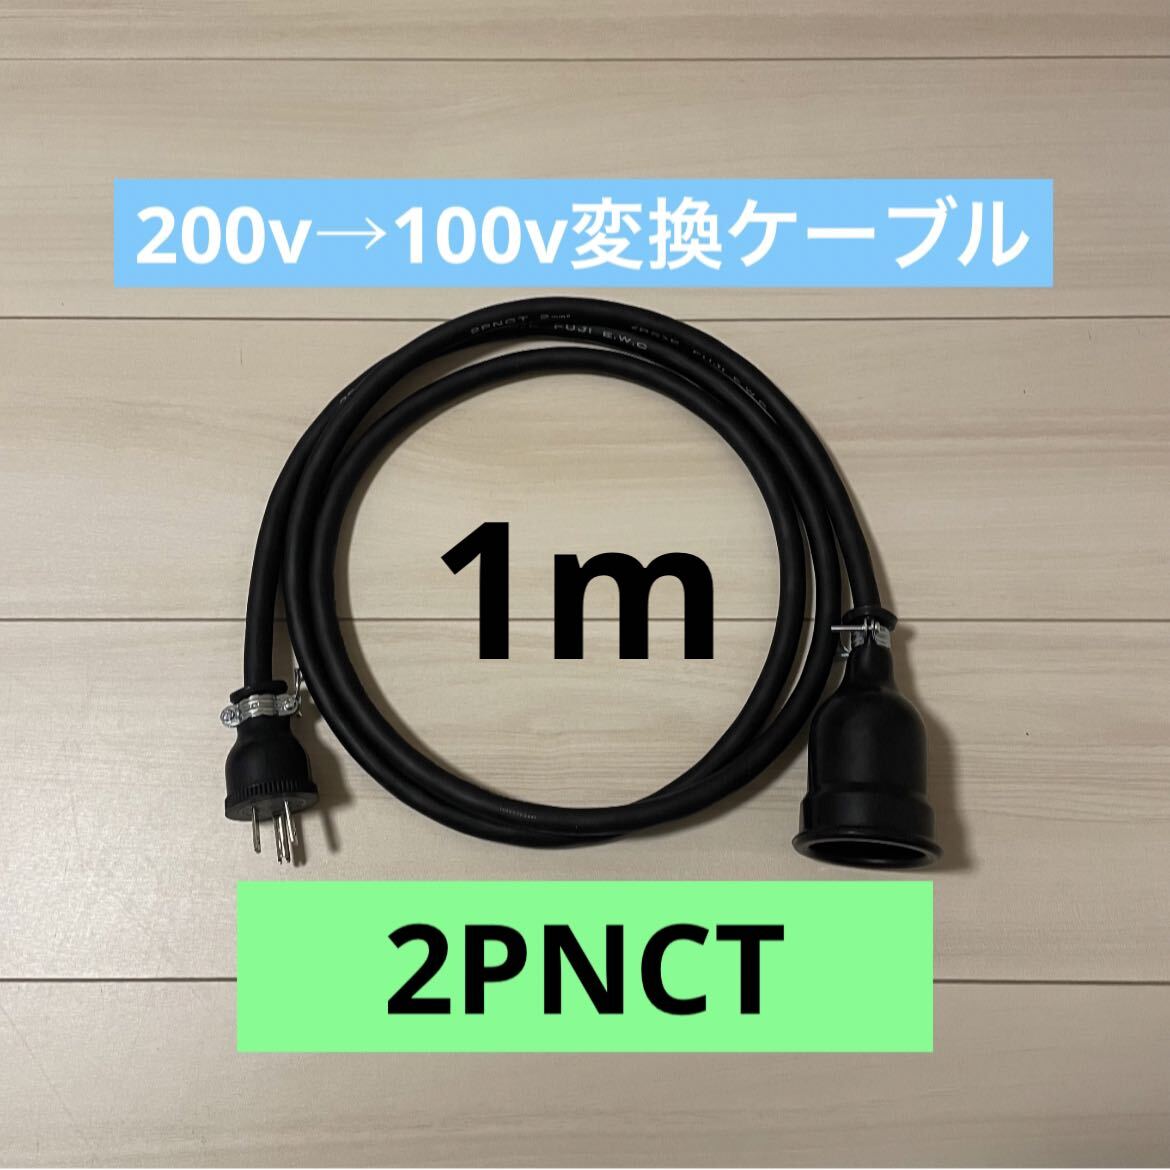 電気自動車コンセント★200V→100V変換充電器延長ケーブル1m 2PNCTの画像1